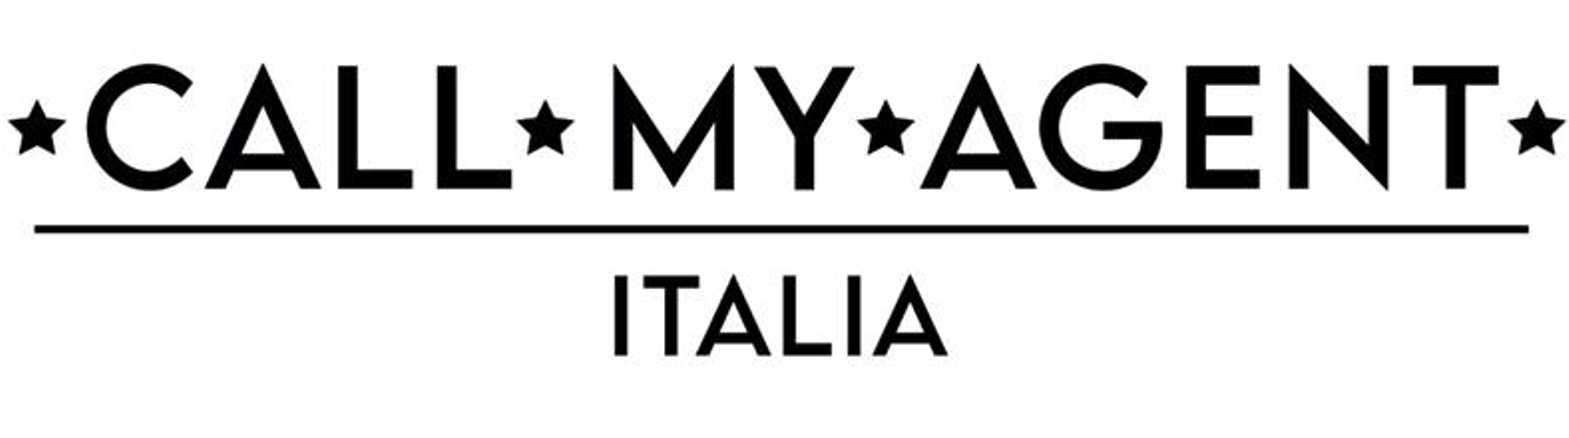 CALL MY AGENT - ITALIA - Da gennaio in esclusiva su Sky e NOW l'attesissima serie Sky Original remake del cult francese